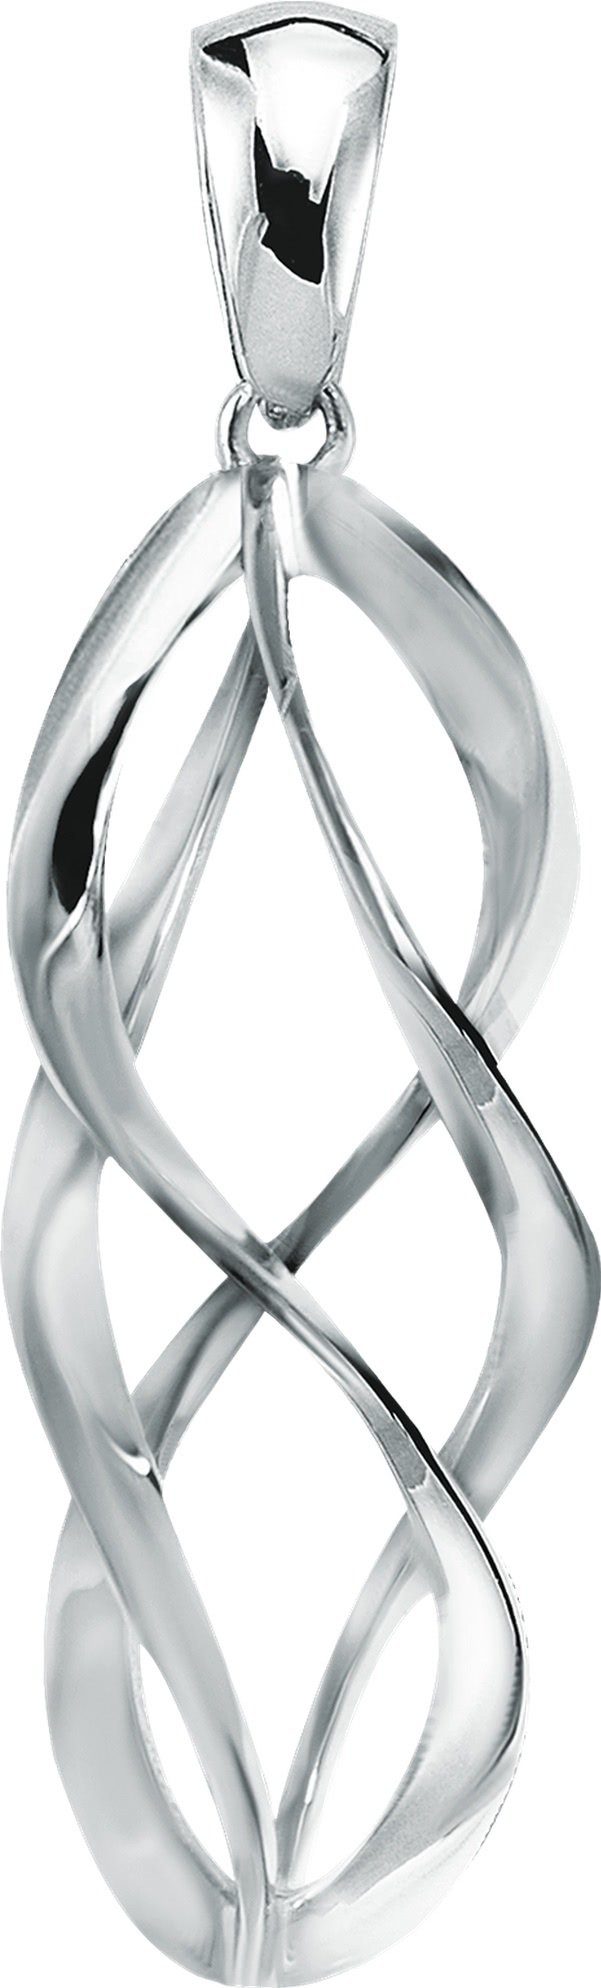 Balia Kettenanhänger Balia Kettenanhänger ca. Sterling Kettenanhänger Silber 3,8cm, Damen 925 (Spirale) Silber